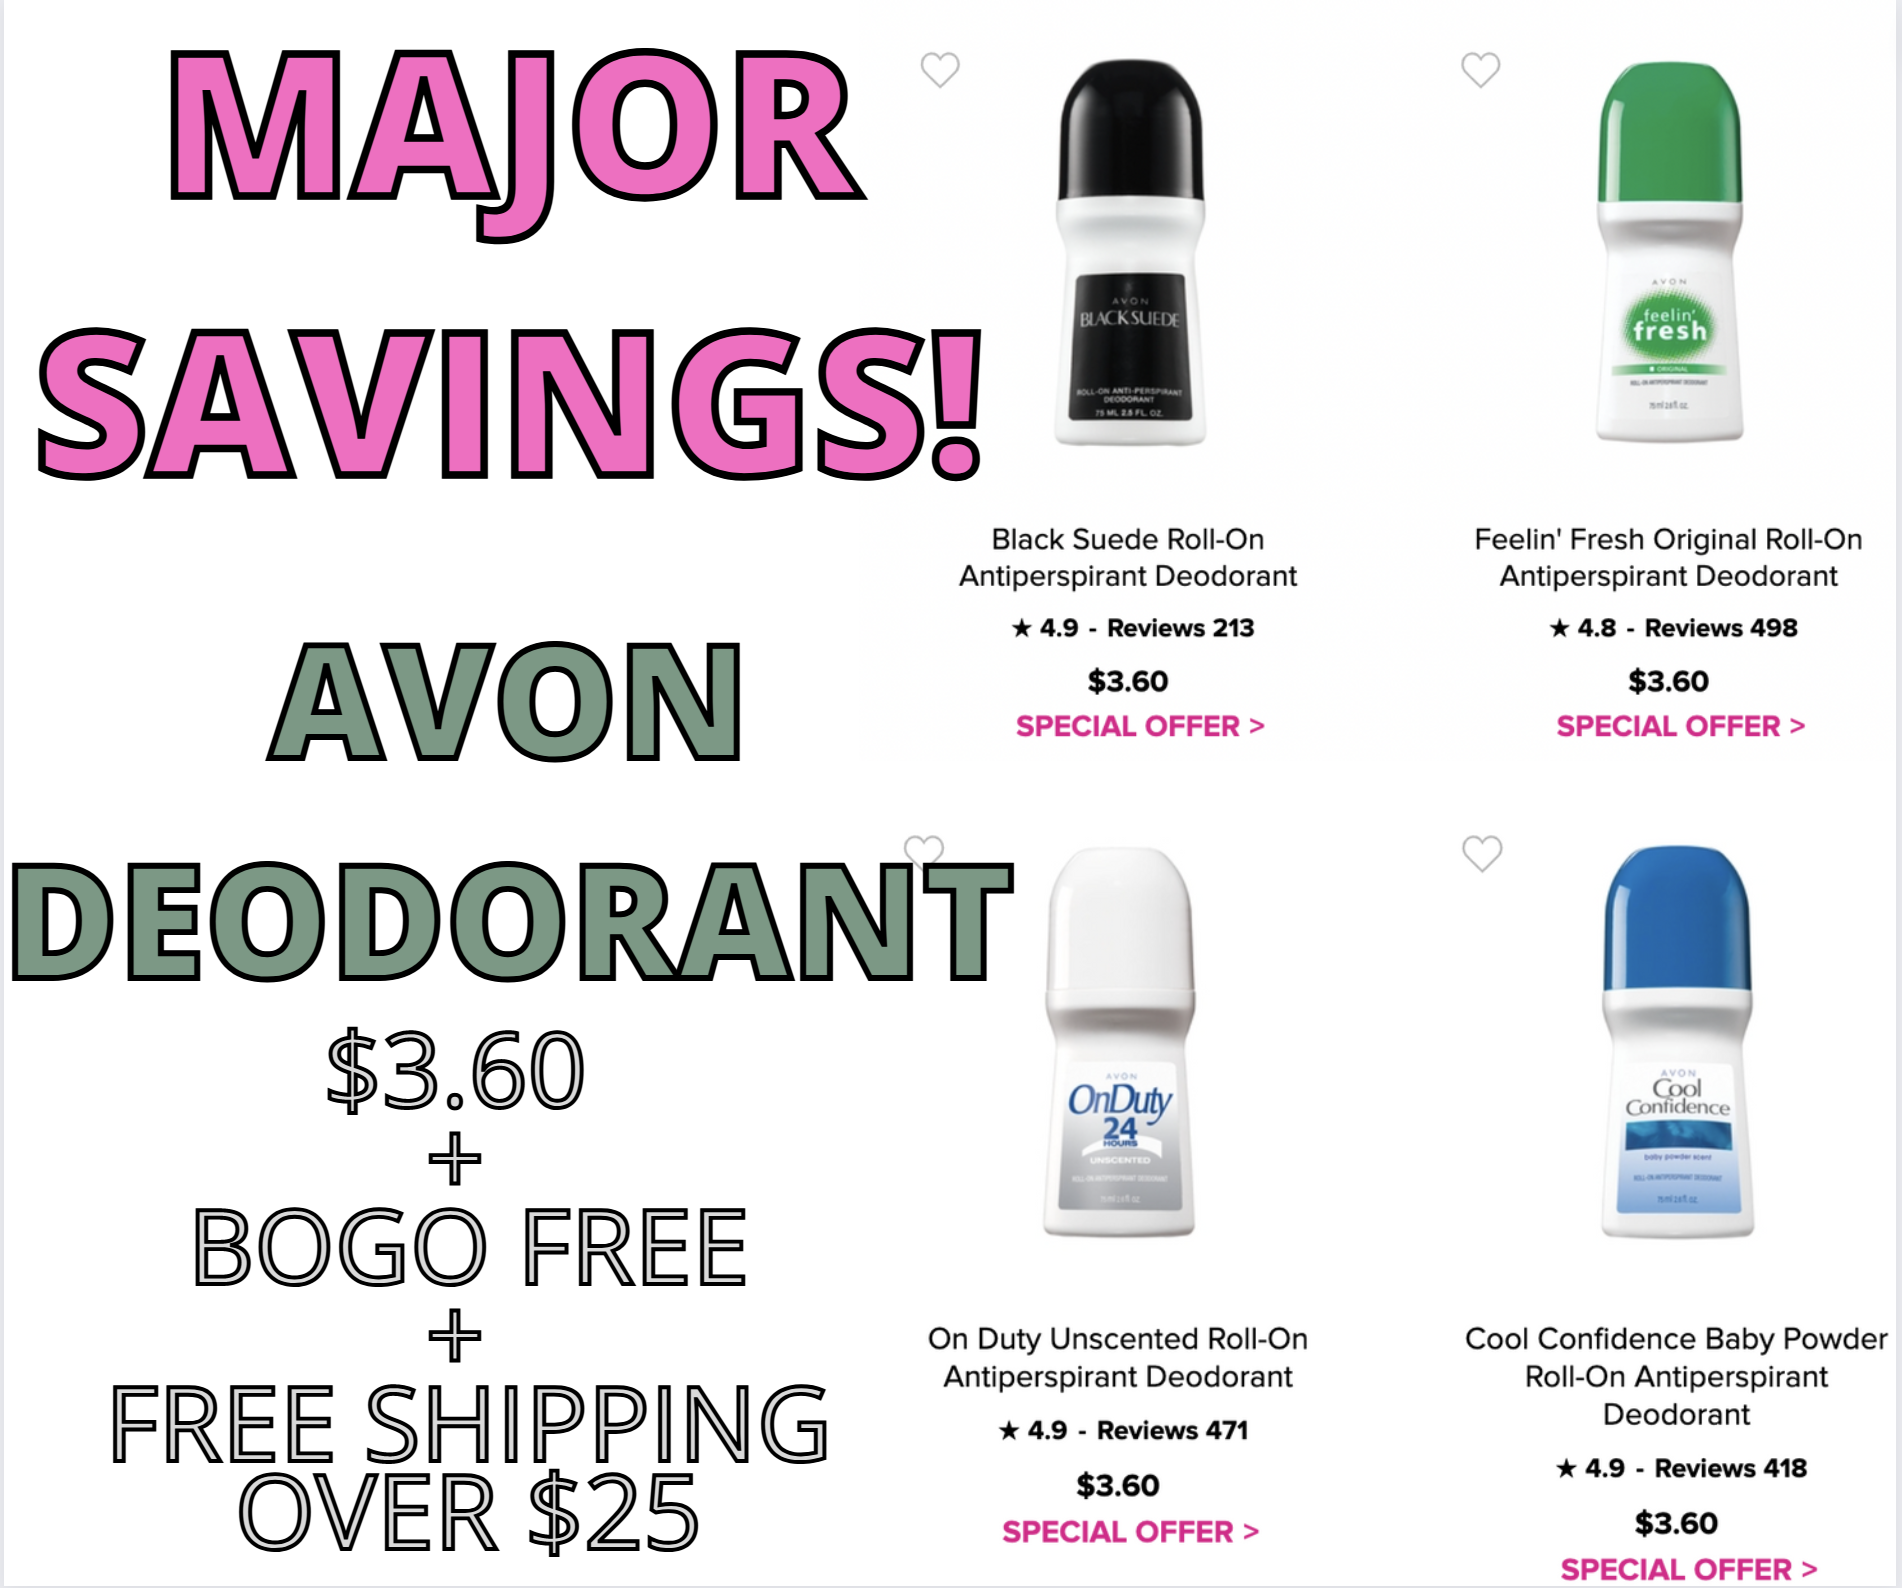 Avon Deodorant On Sale Now!